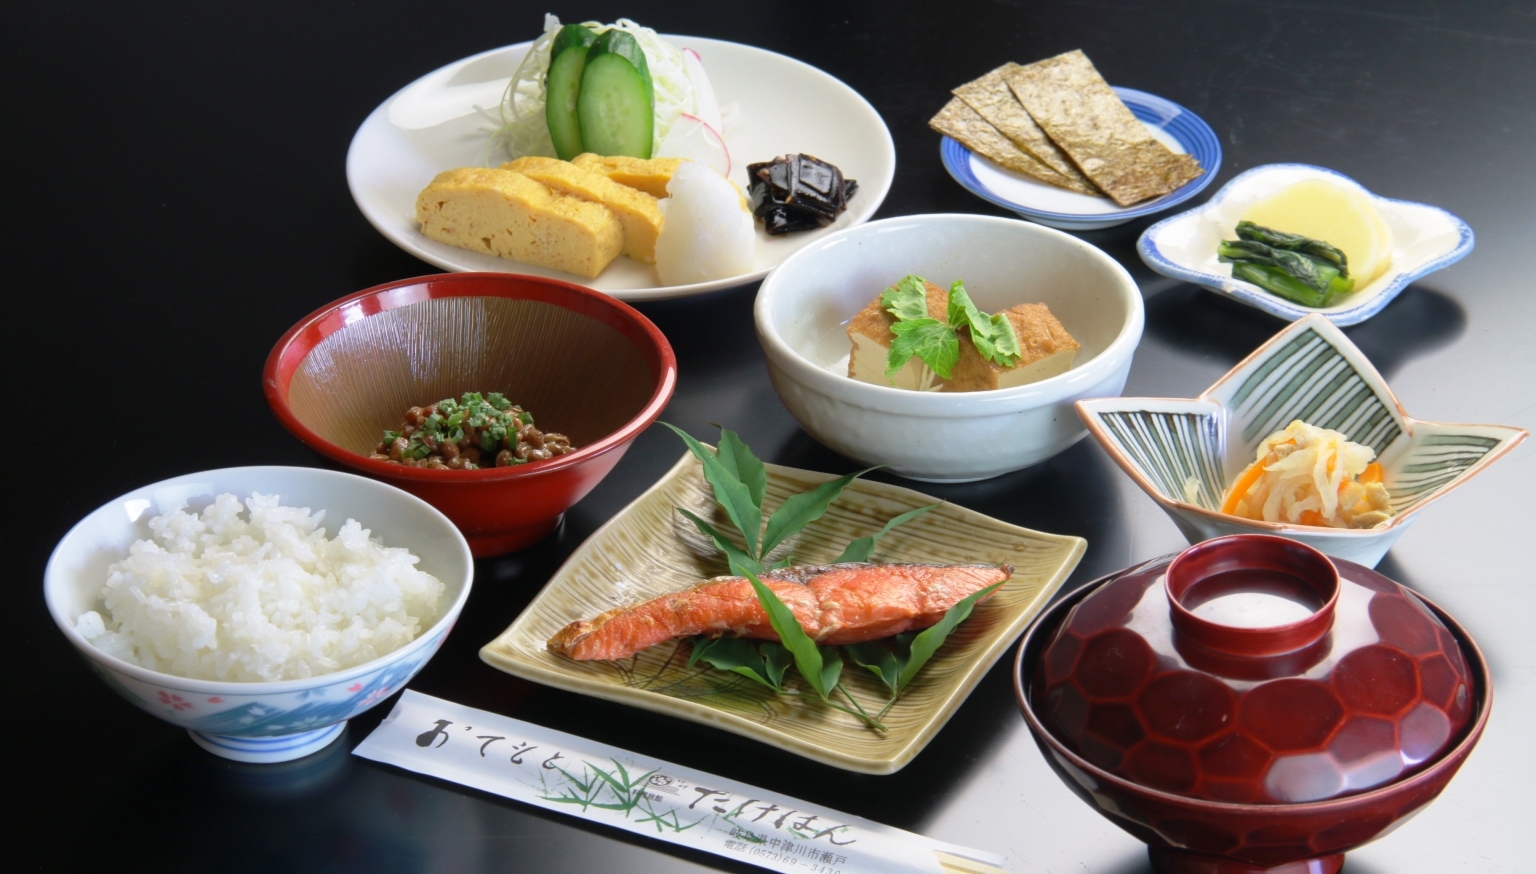 【スタンダード】上質な四季折々の食材でおもてなし♪岐阜県 中津川を味わい尽くす 2食【家族旅行応援】